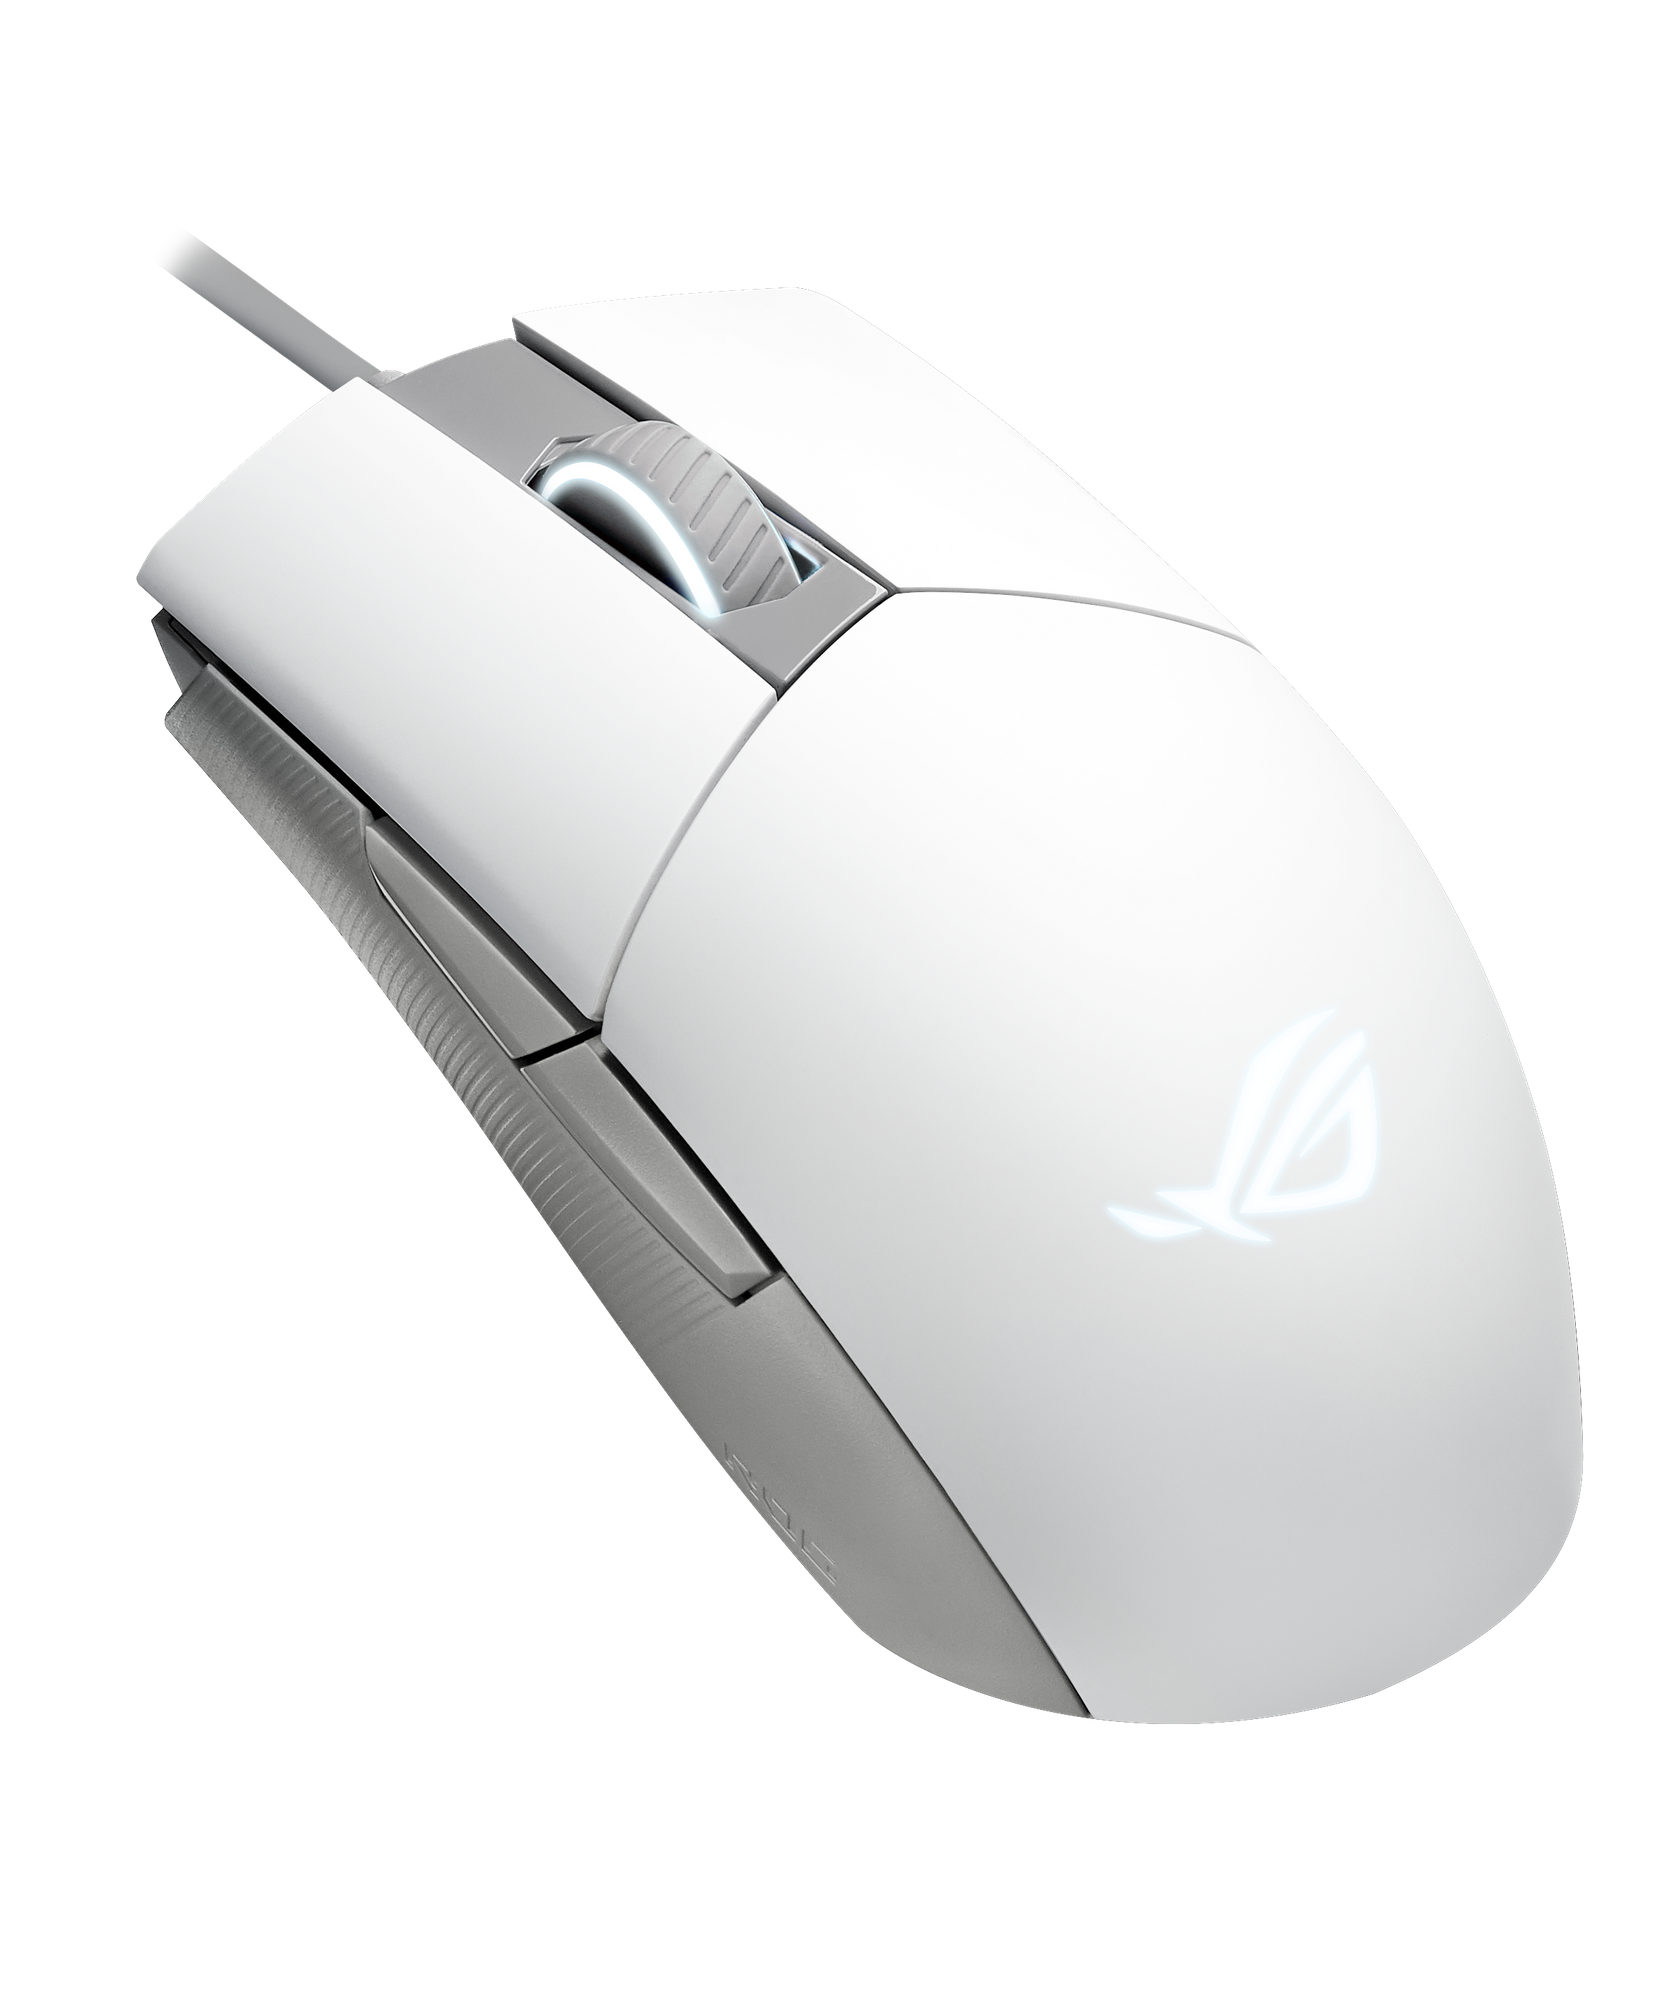 ASUS ROG STRIX Impact II Moonlight White ergonomic gaming mouse thumbnail 5